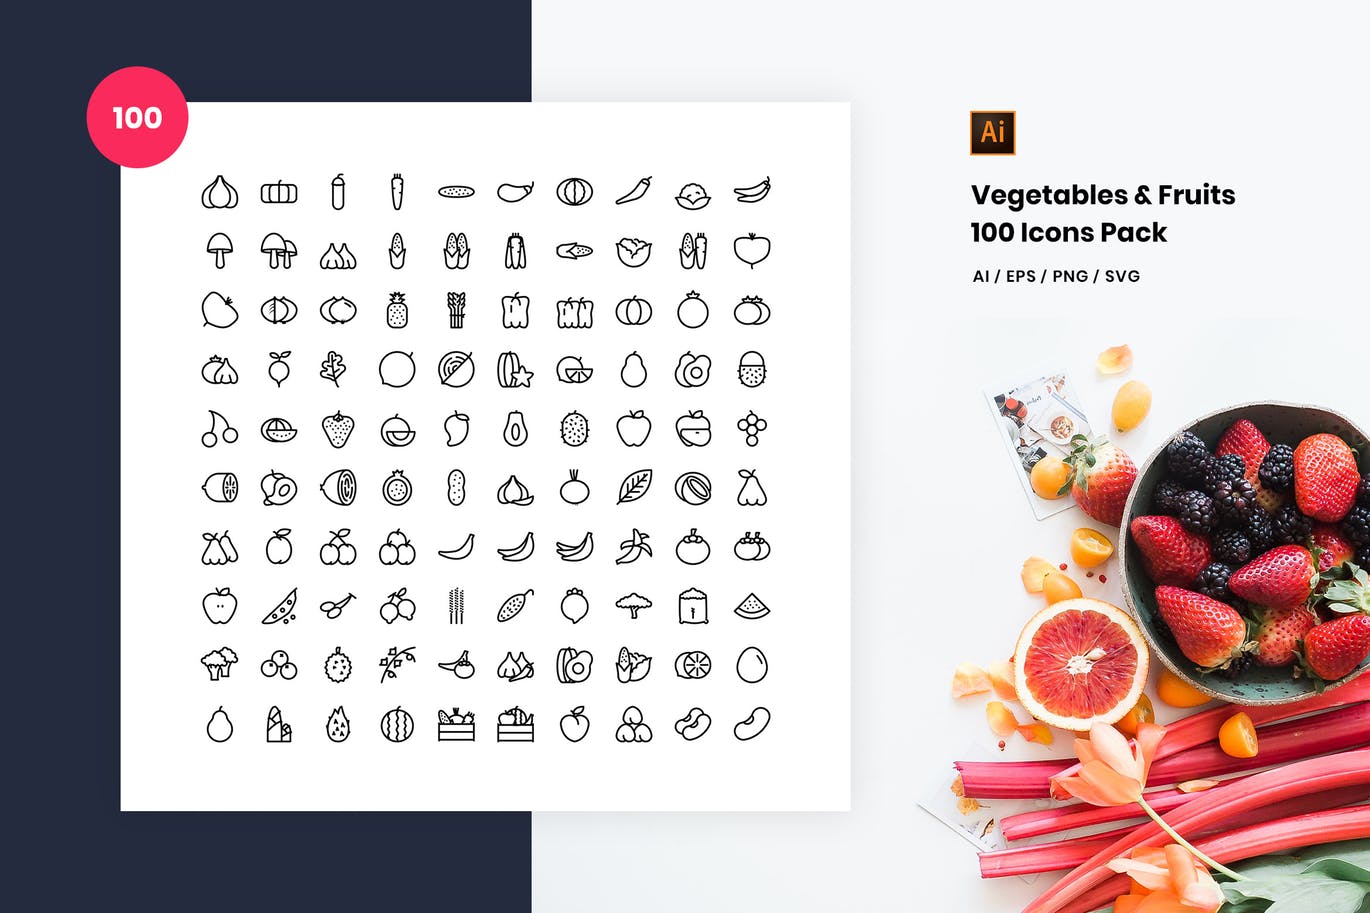 100枚蔬菜&水果主题矢量第一素材精选图标 Vegetables and Fruits 100 Icon Pack插图